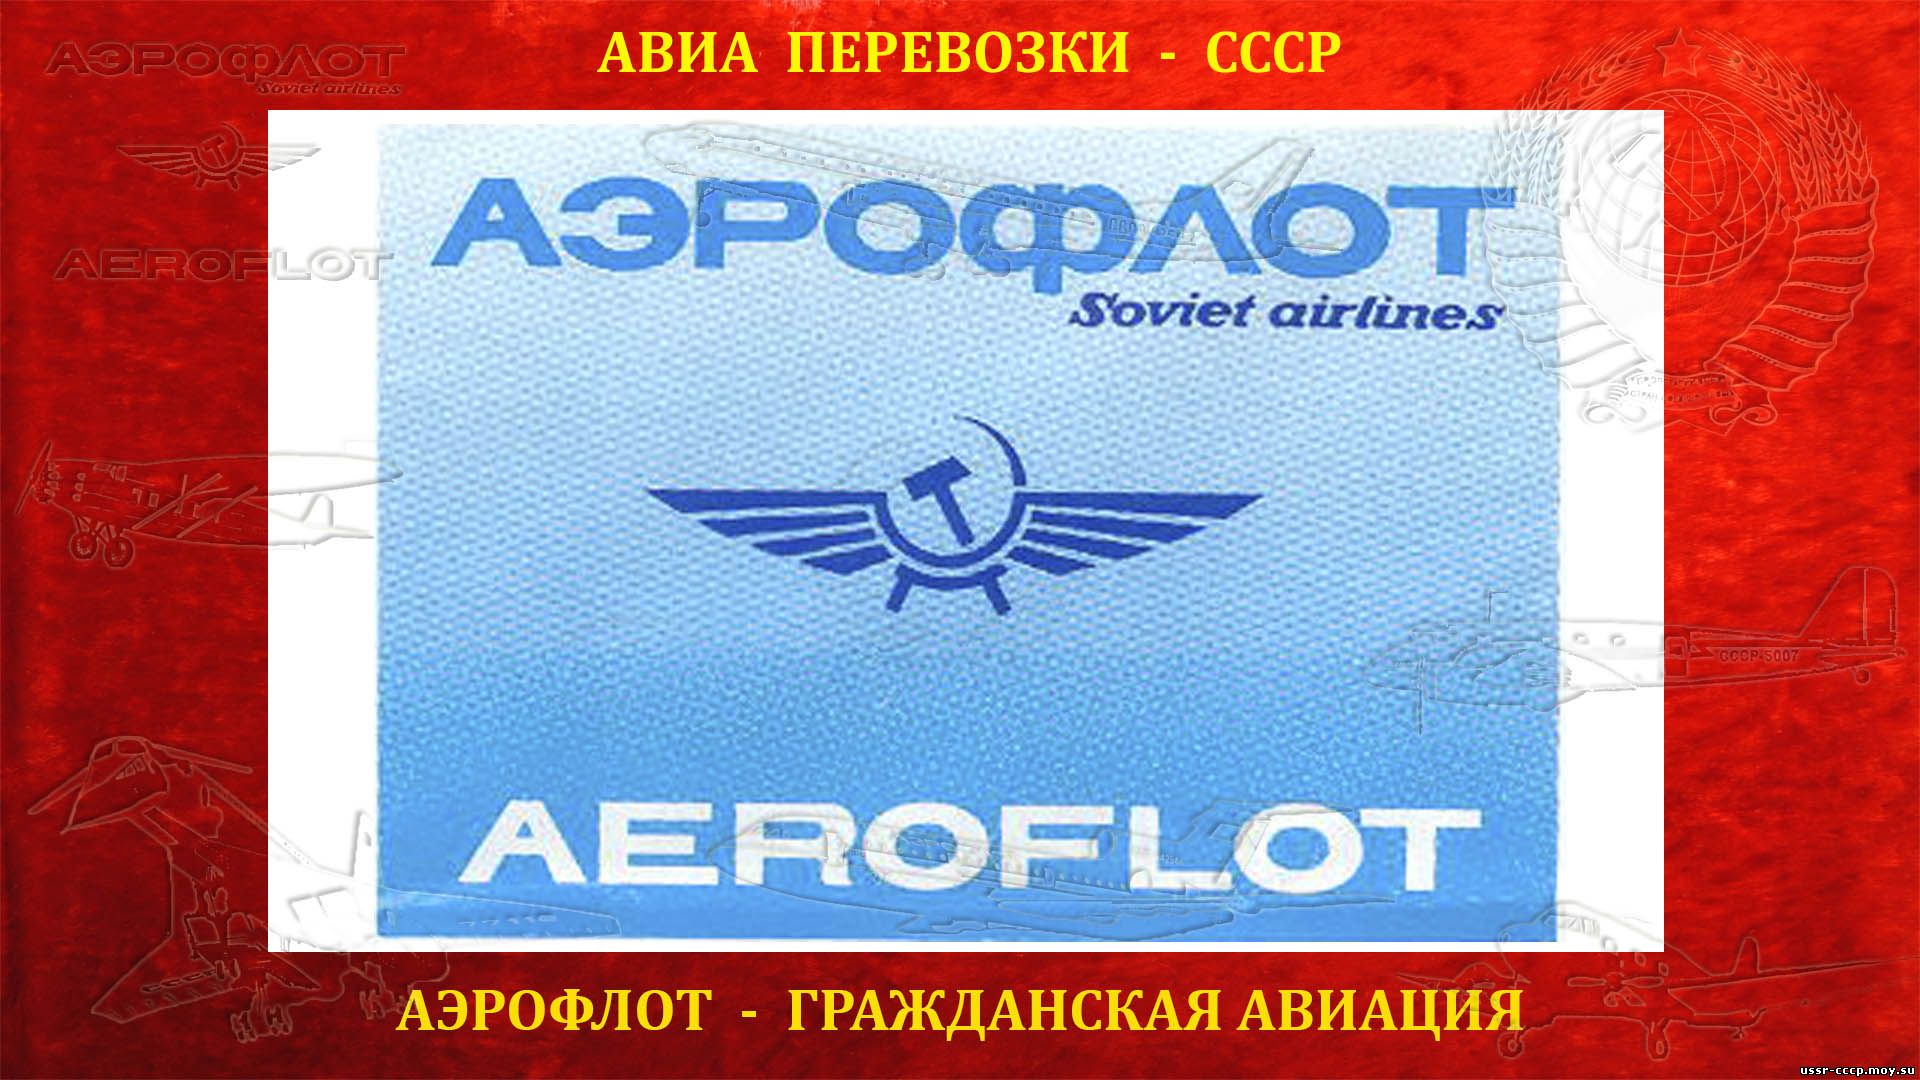 АЭРОФЛОТ - Гражданский Воздушный Флот СССР (повествование)